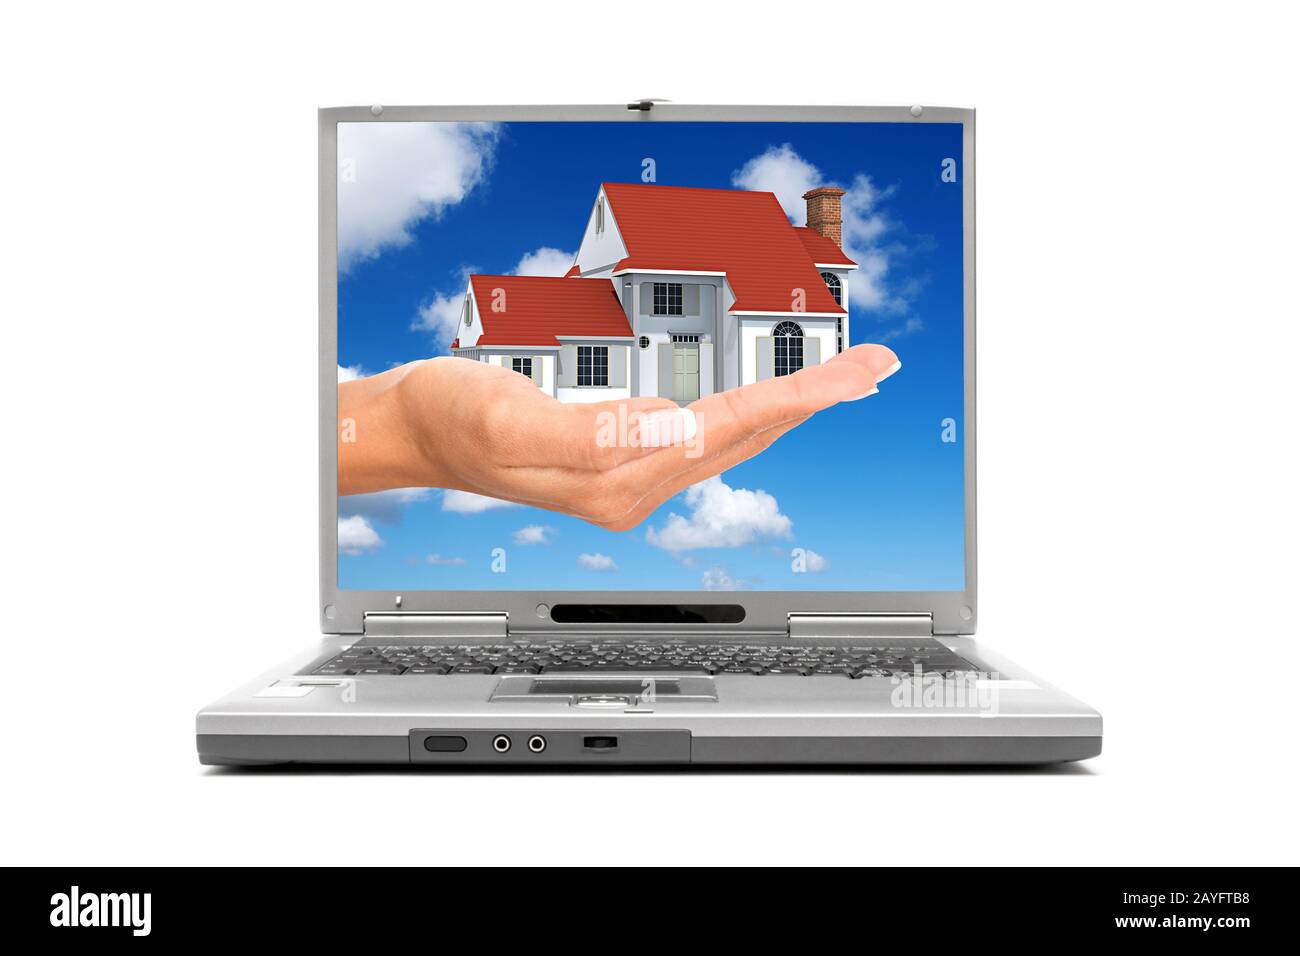 ordinateur portable montrant une maison familiale dans une main sur l'écran Banque D'Images